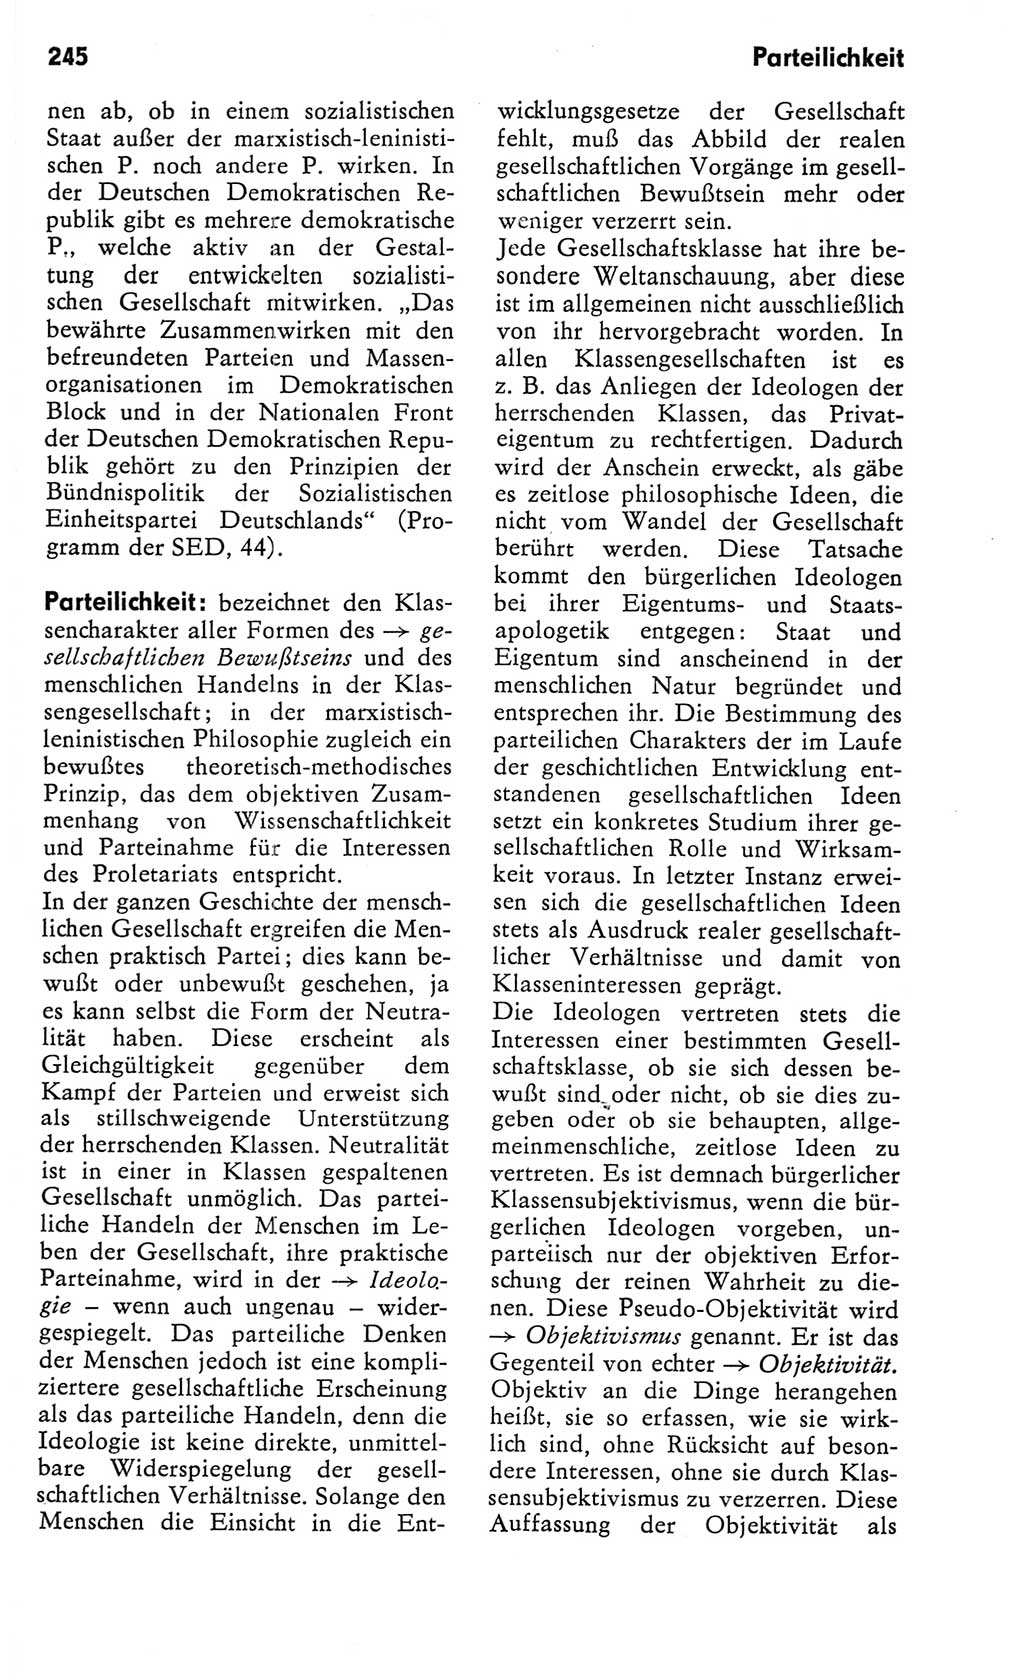 Kleines Wörterbuch der marxistisch-leninistischen Philosophie [Deutsche Demokratische Republik (DDR)] 1982, Seite 245 (Kl. Wb. ML Phil. DDR 1982, S. 245)